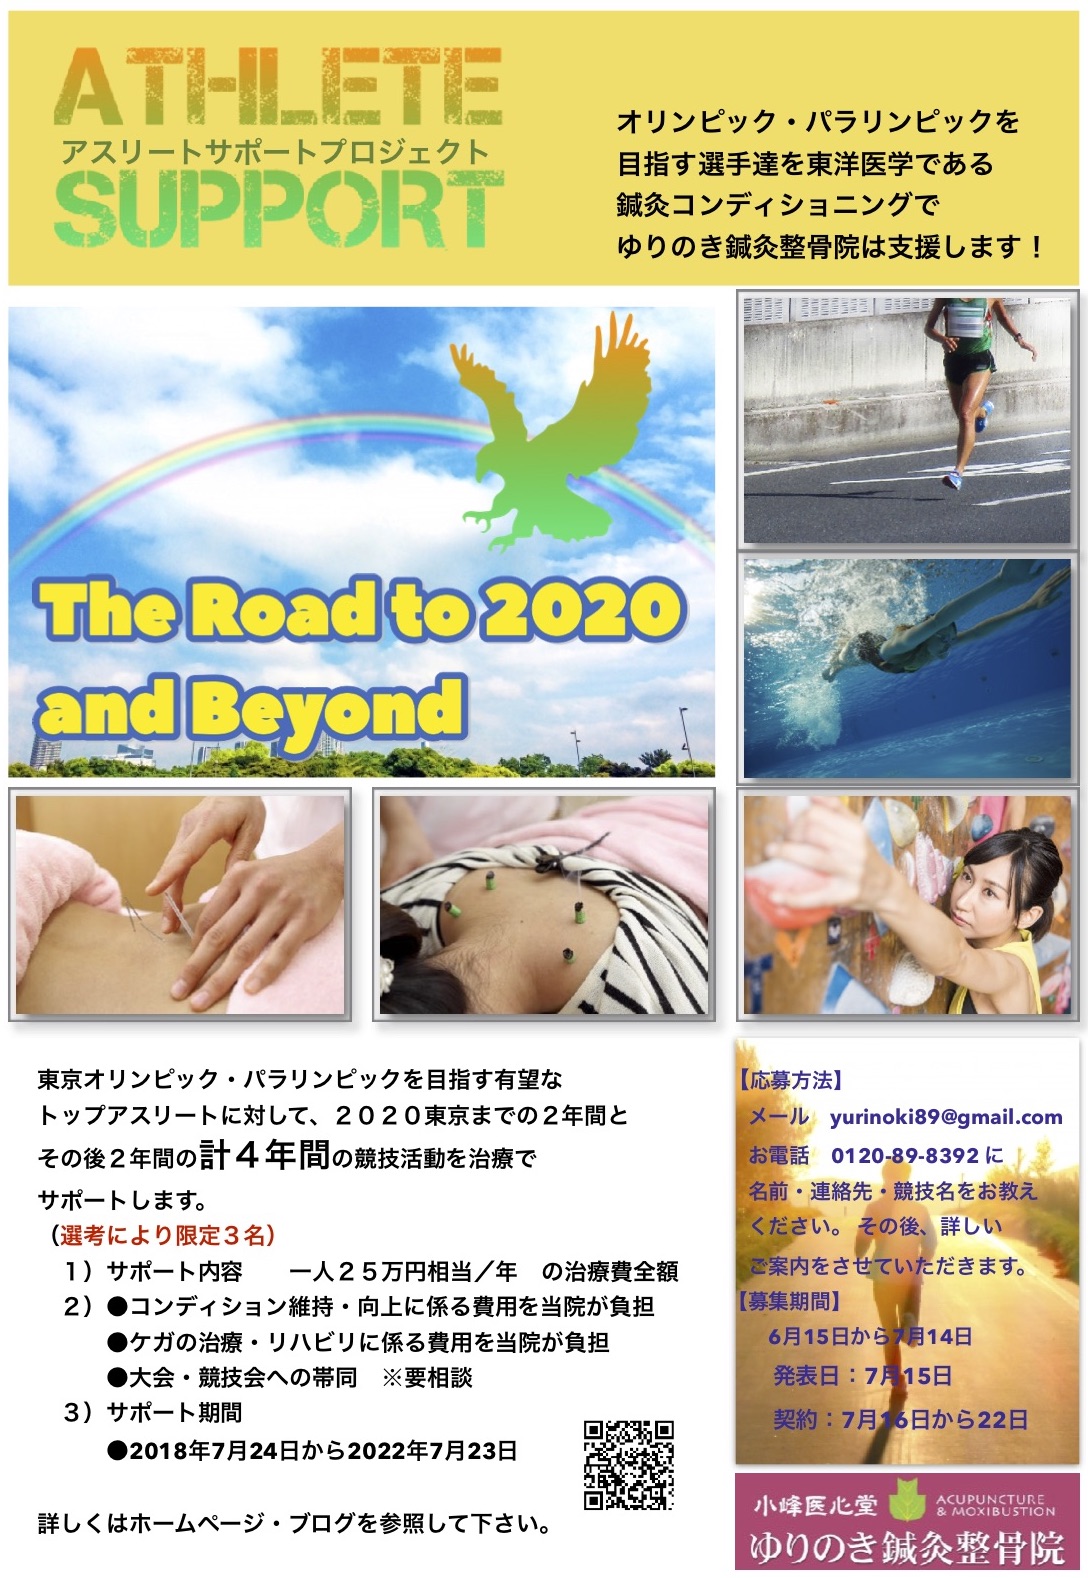 アスリートサポート、埼玉県、春日部市、オリンピック、パラリンピック、鍼灸、コンディショニング、